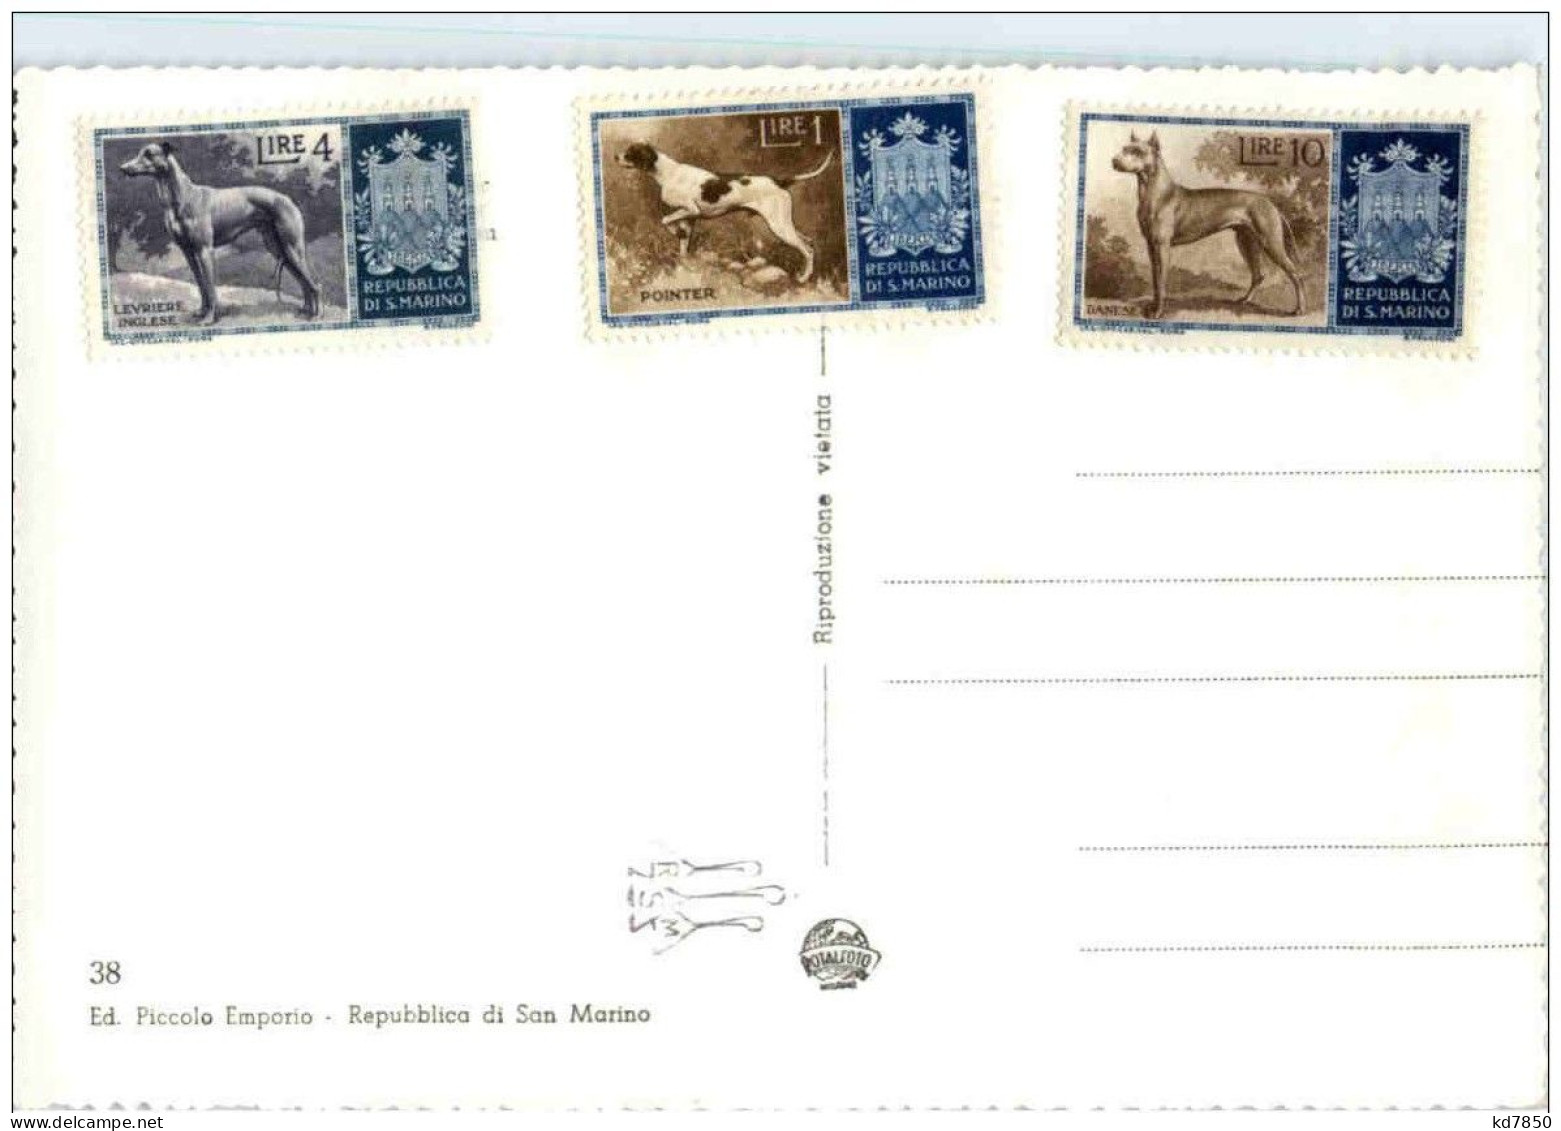 San Marino - Stamps - San Marino